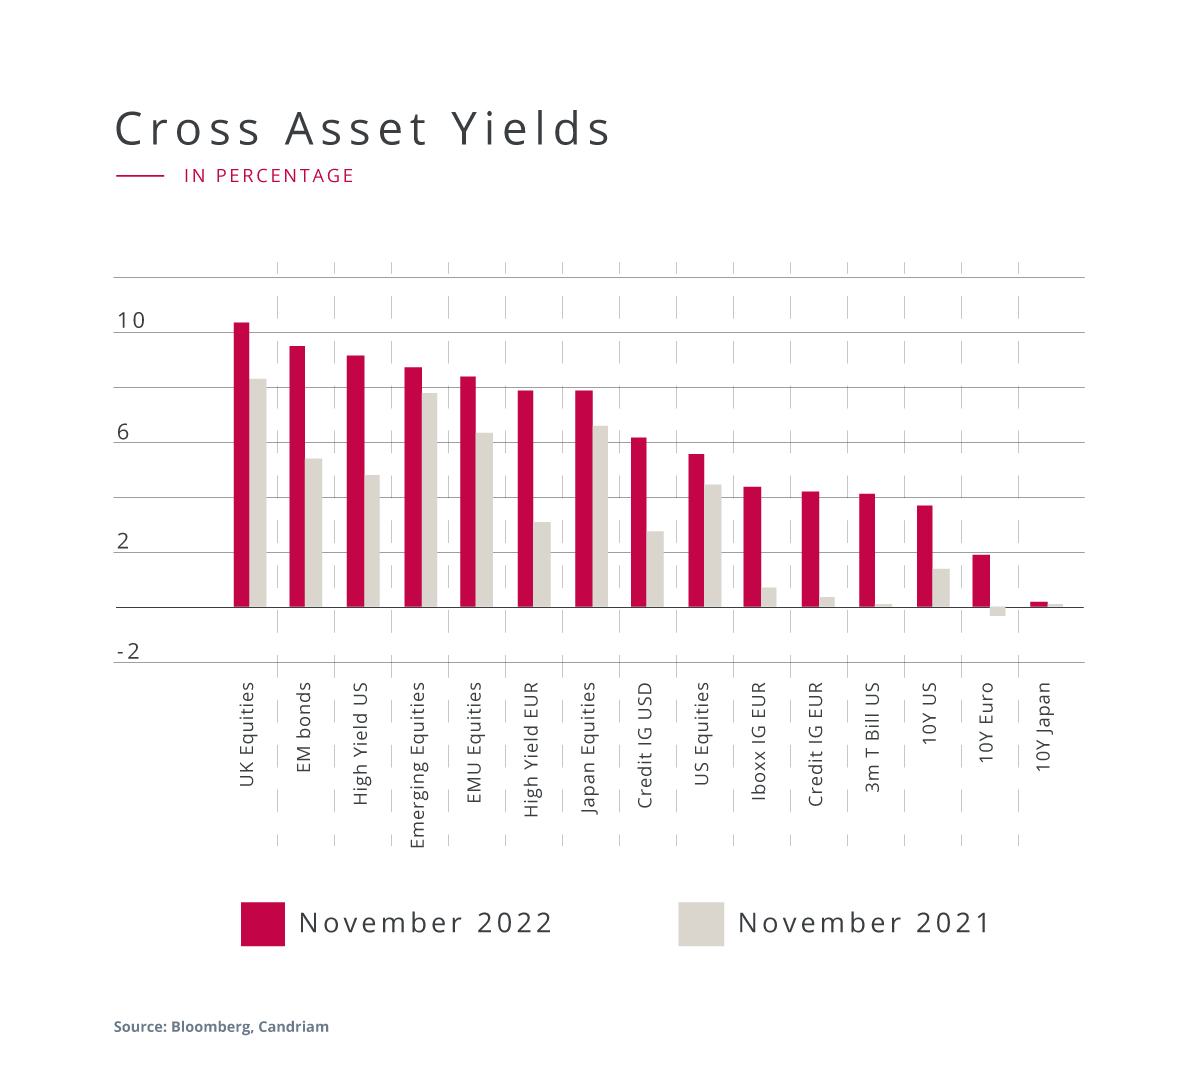 Cross Asset Yields in percentage